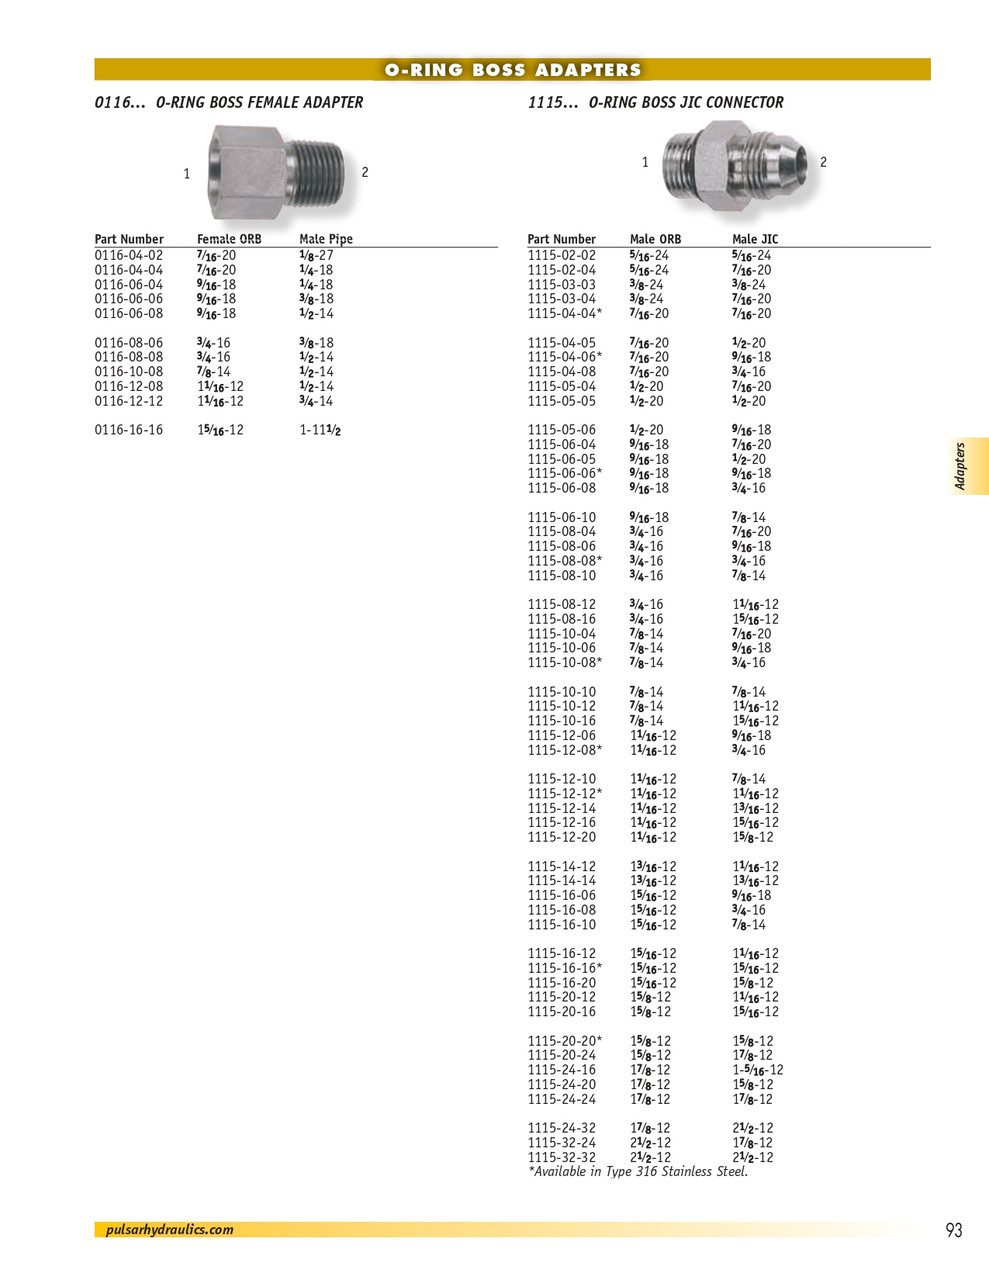 1-3/16"-12 x 7/8" Steel Male ORB - Male 37° JIC Connector  1115-14-14